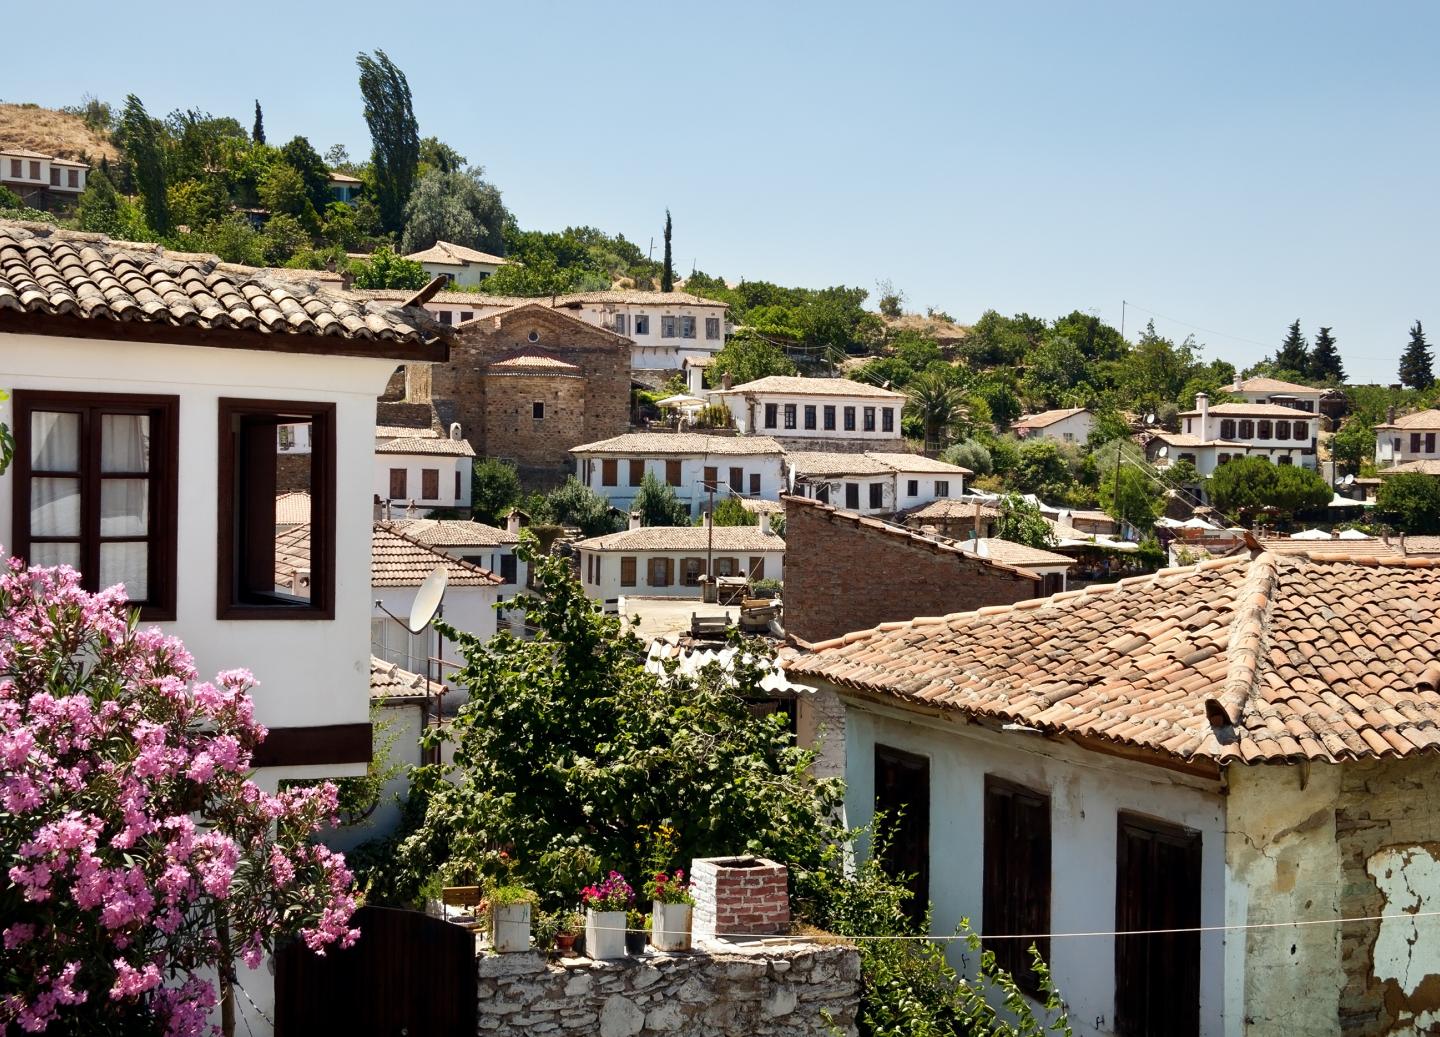 Private Aegean Villages Tour: Kirazli, Camlik, and Sirince, Izmir - TURQUIA